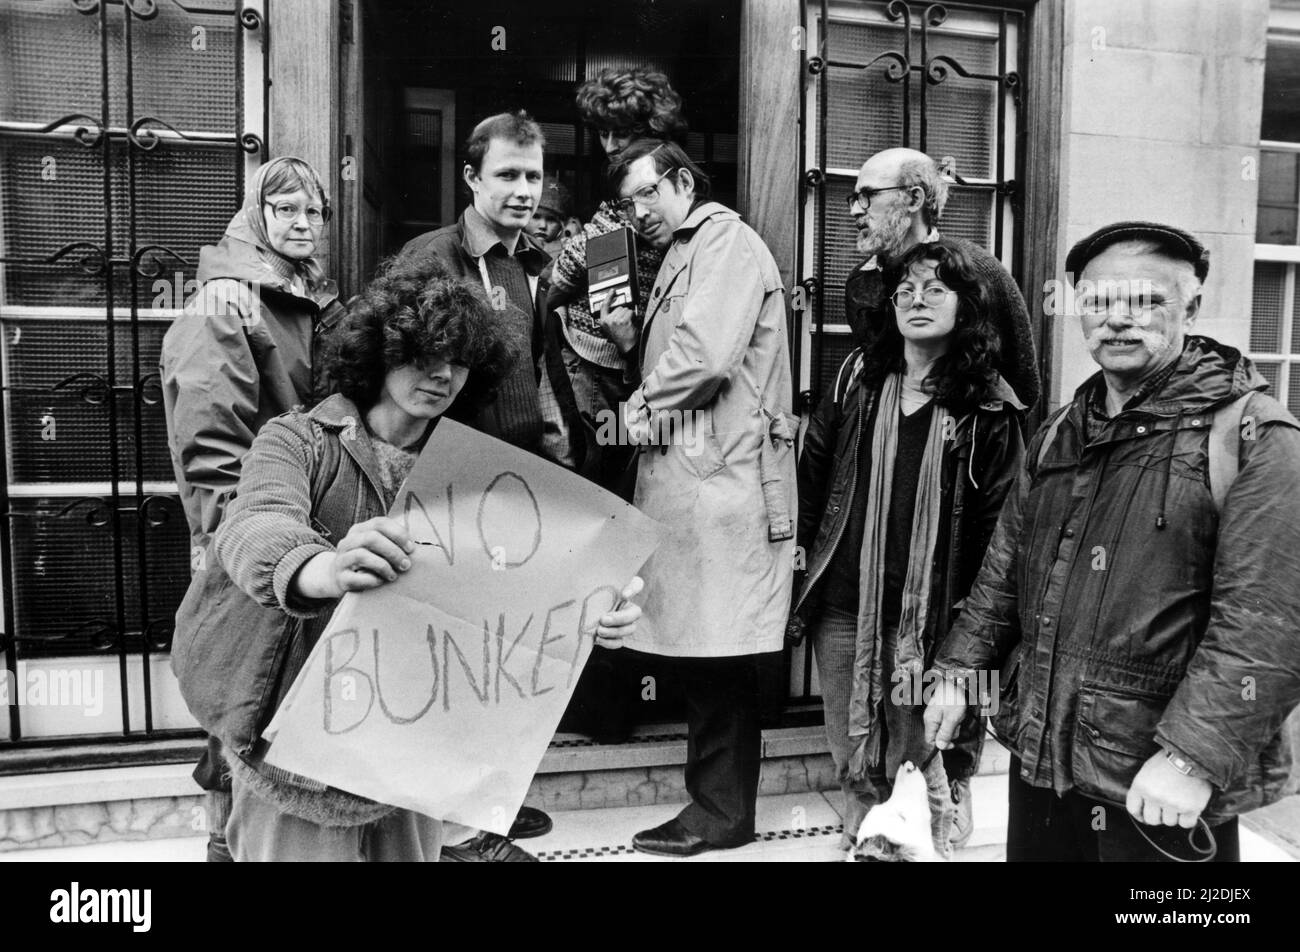 Les manifestants du Bunker nucléaire de Carmarthen arrivent à la réunion du conseil du district de Carmarthen à Llandysul. Helen Hobson détient une affiche de protestation. Janvier 1986. Banque D'Images